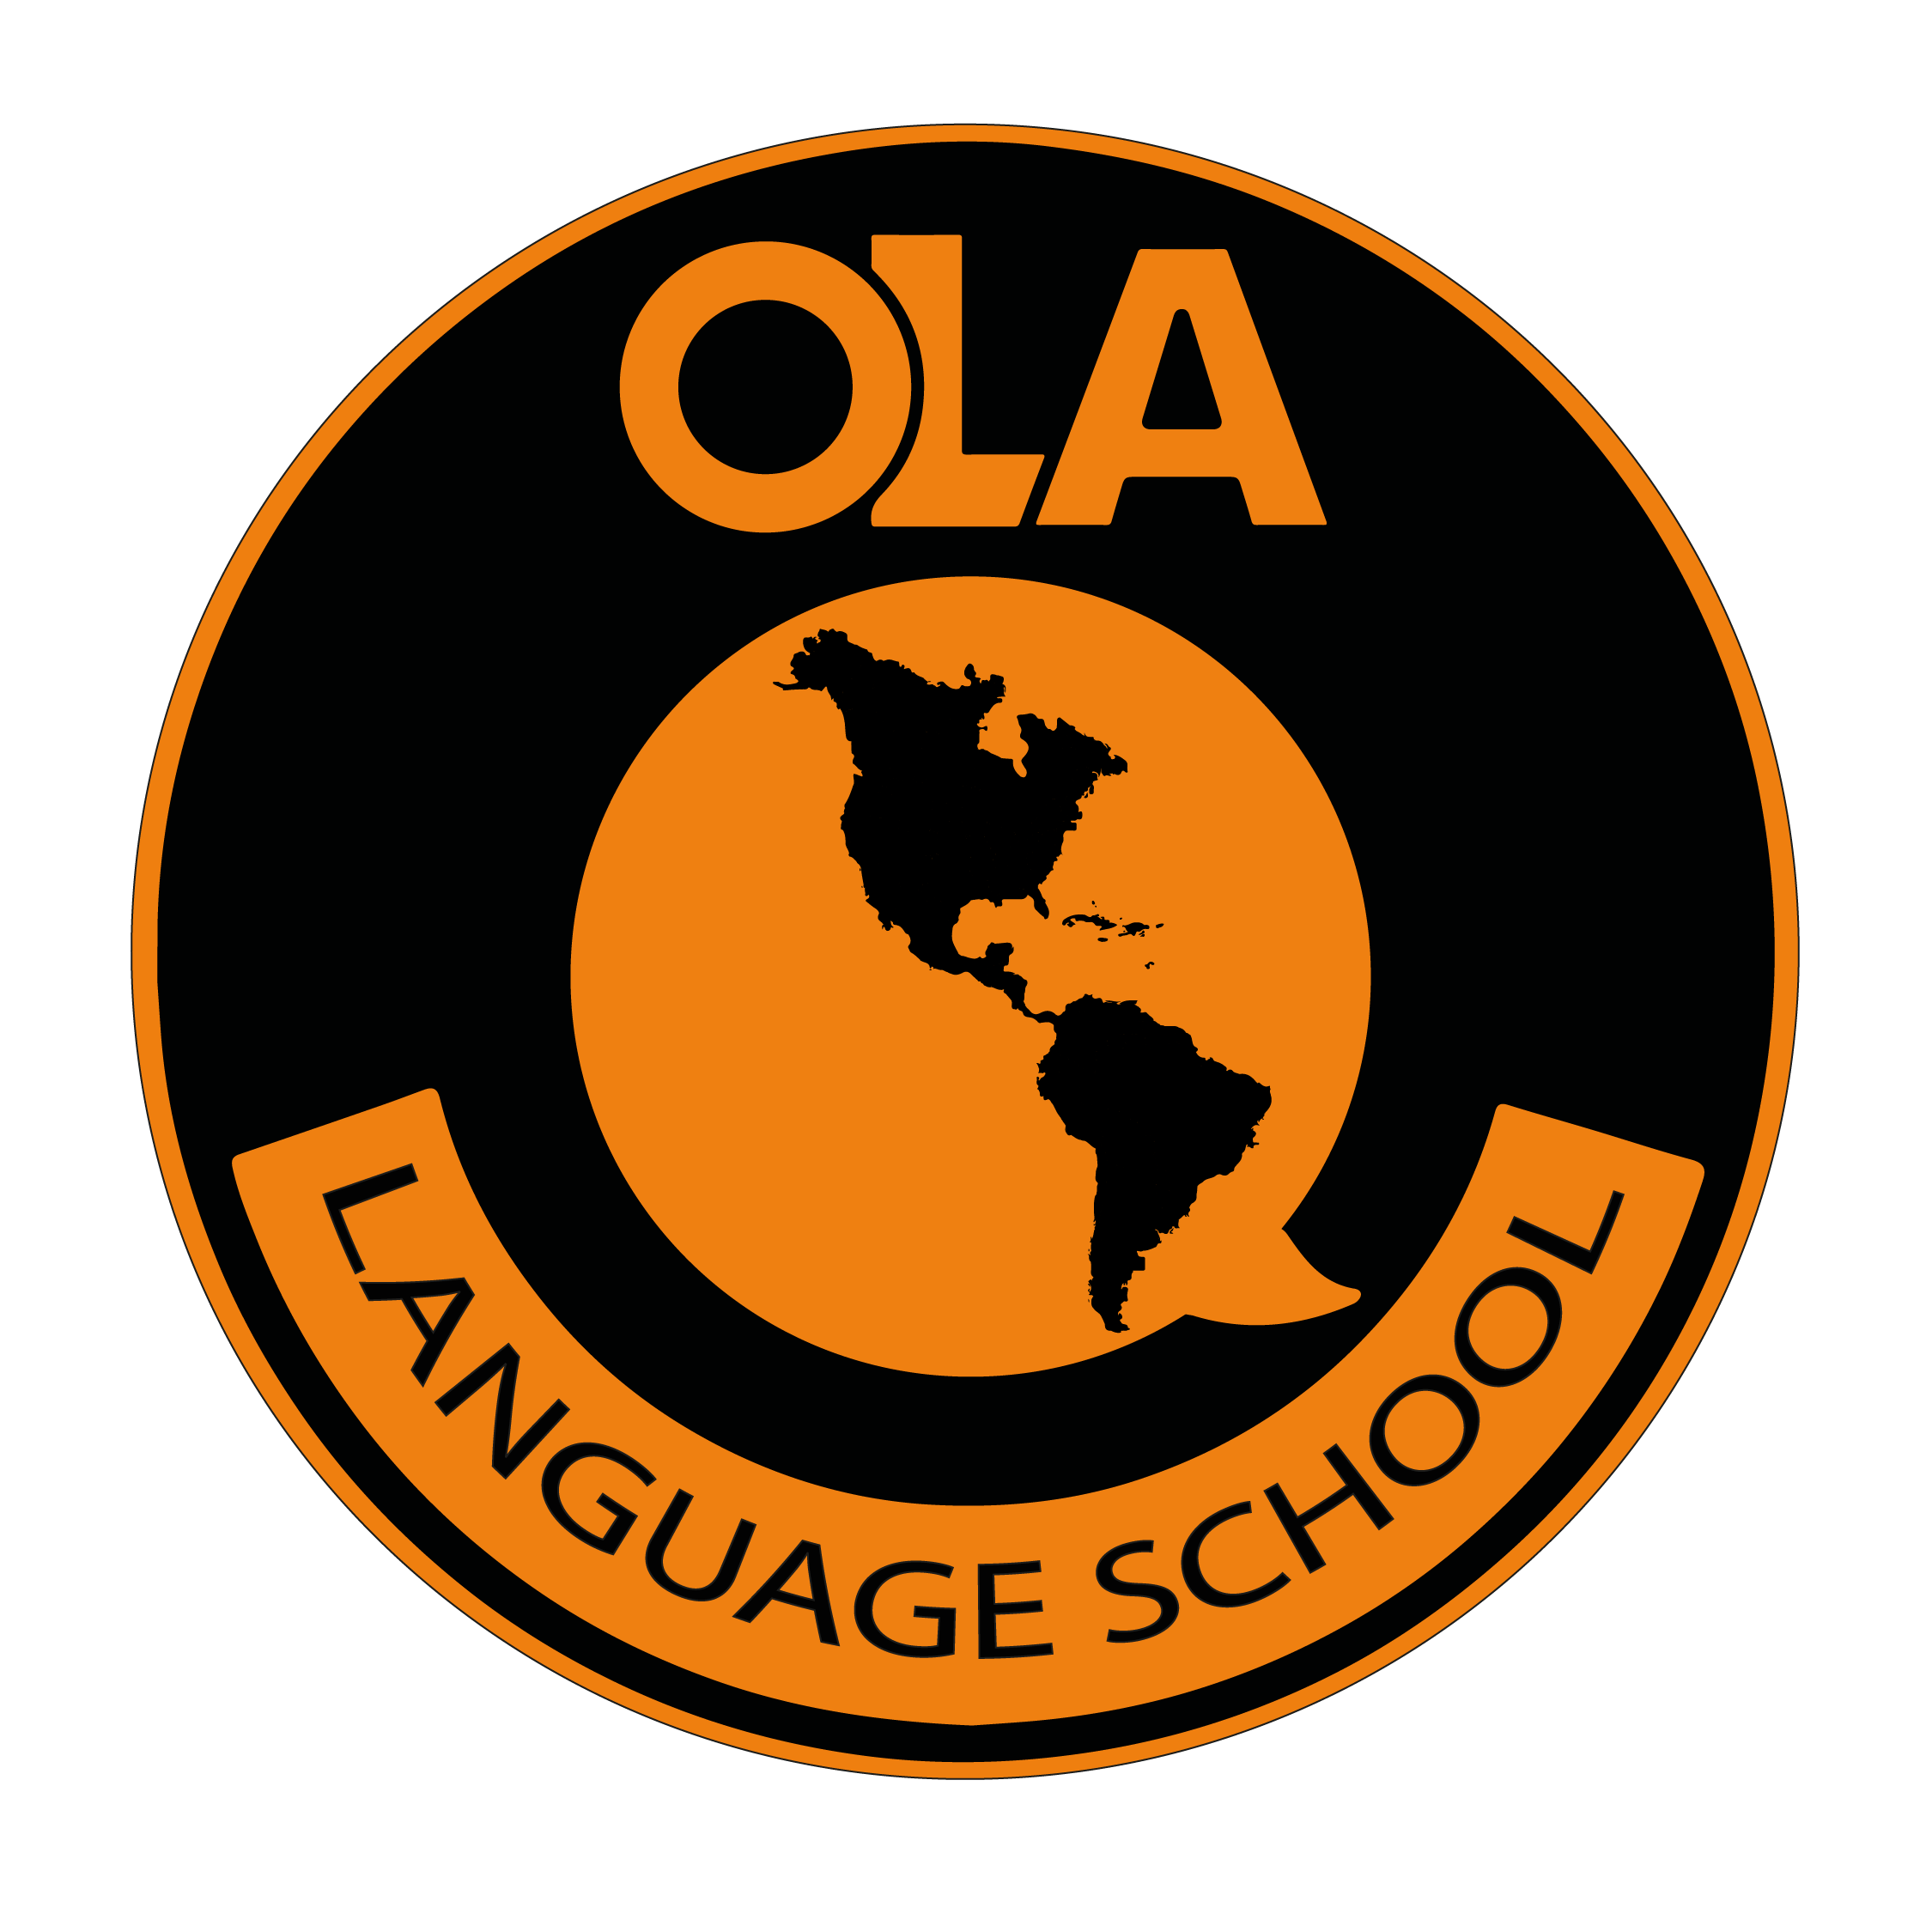 Ola Languages School